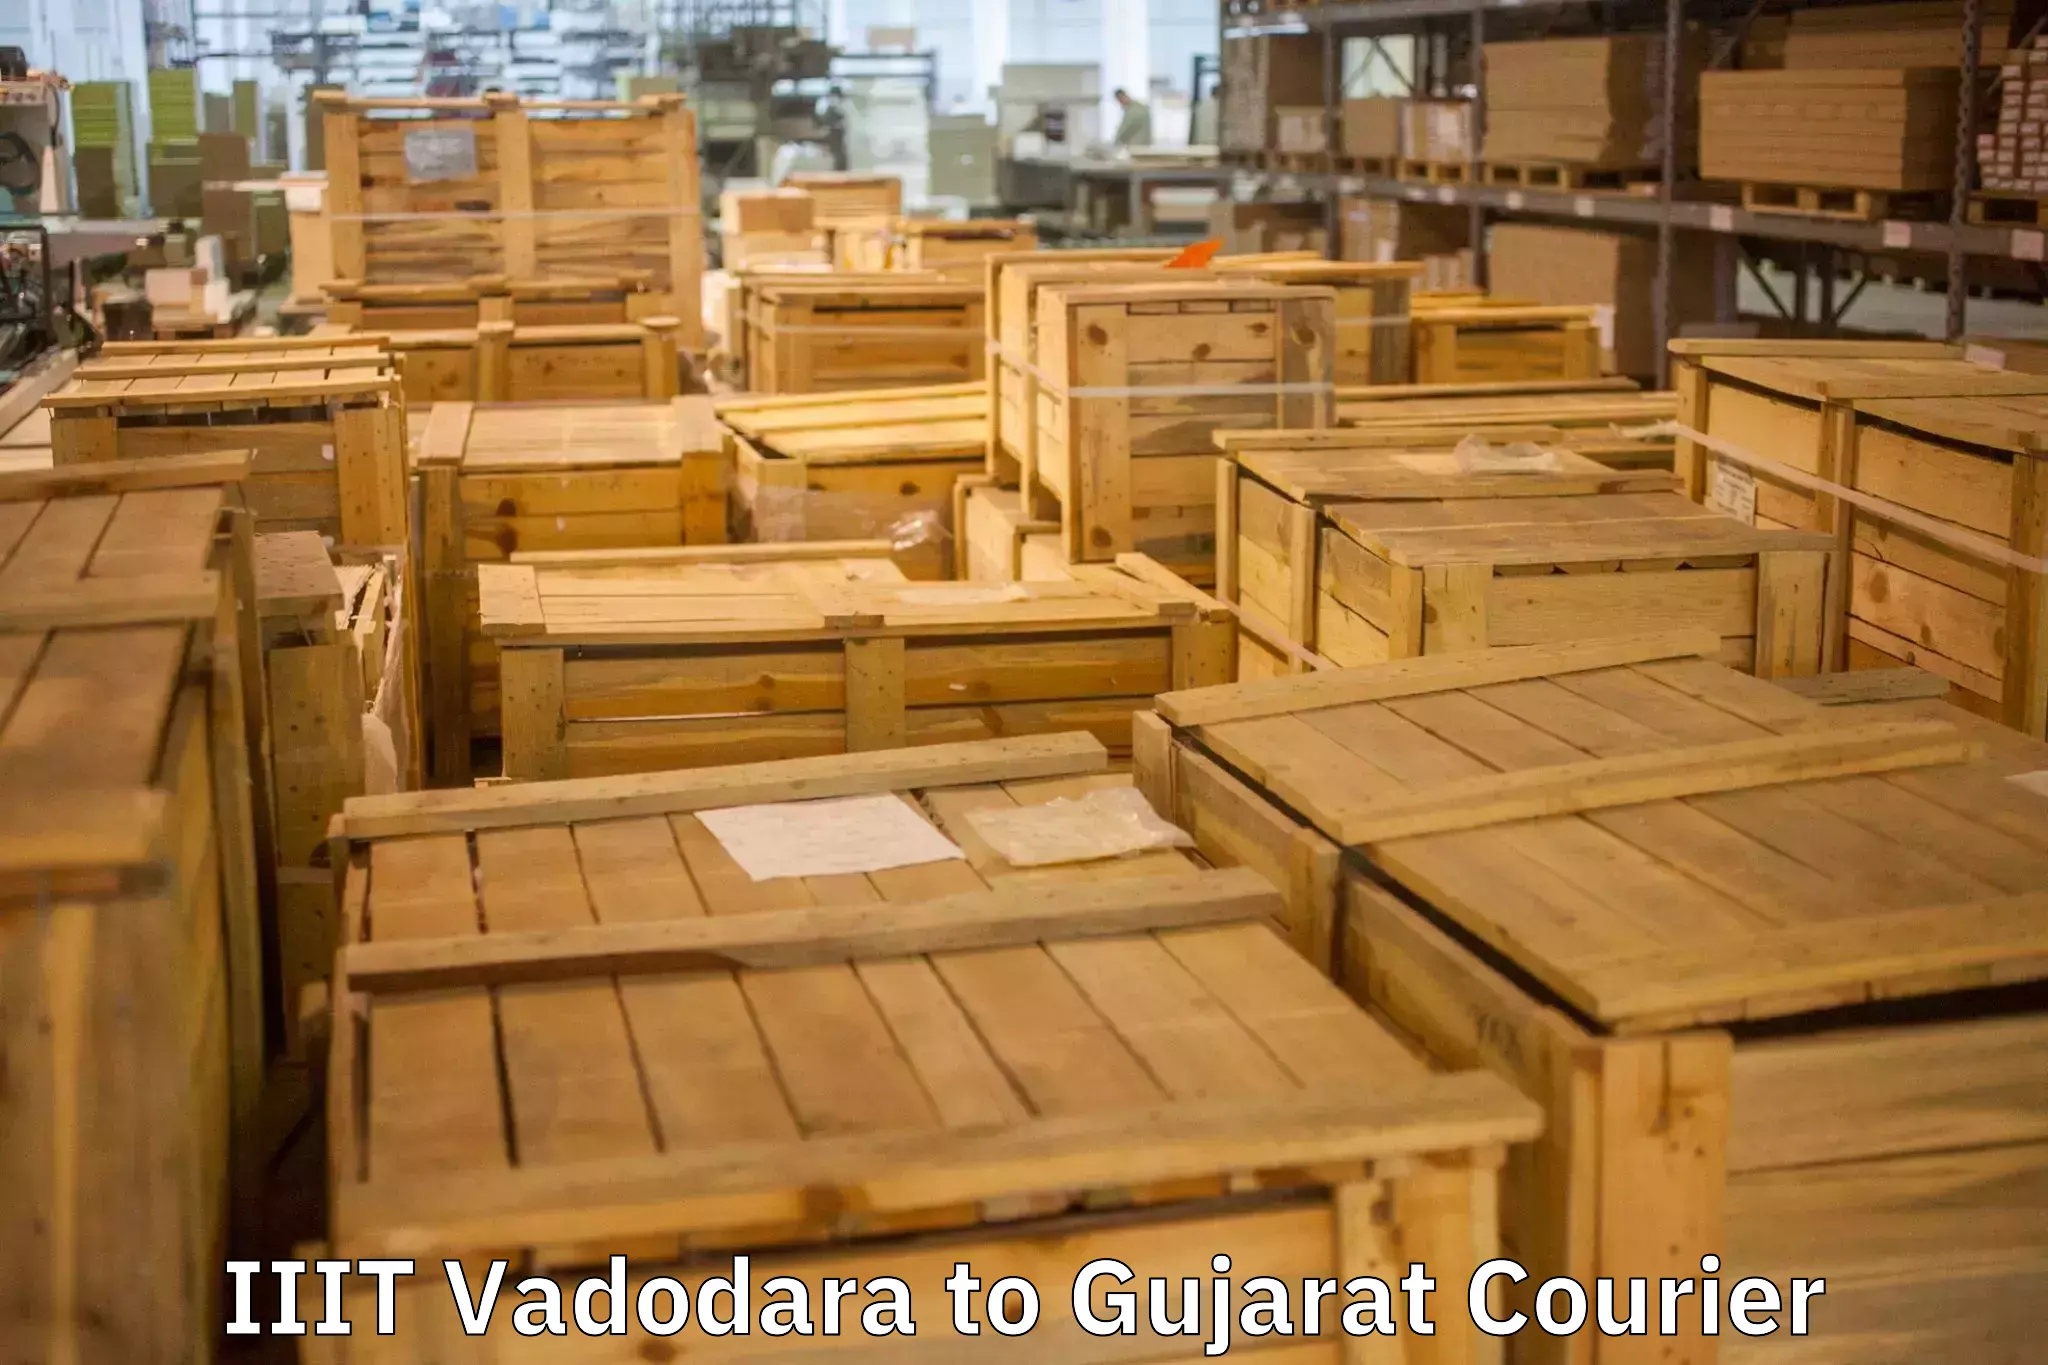 Furniture moving experts in IIIT Vadodara to Keshod